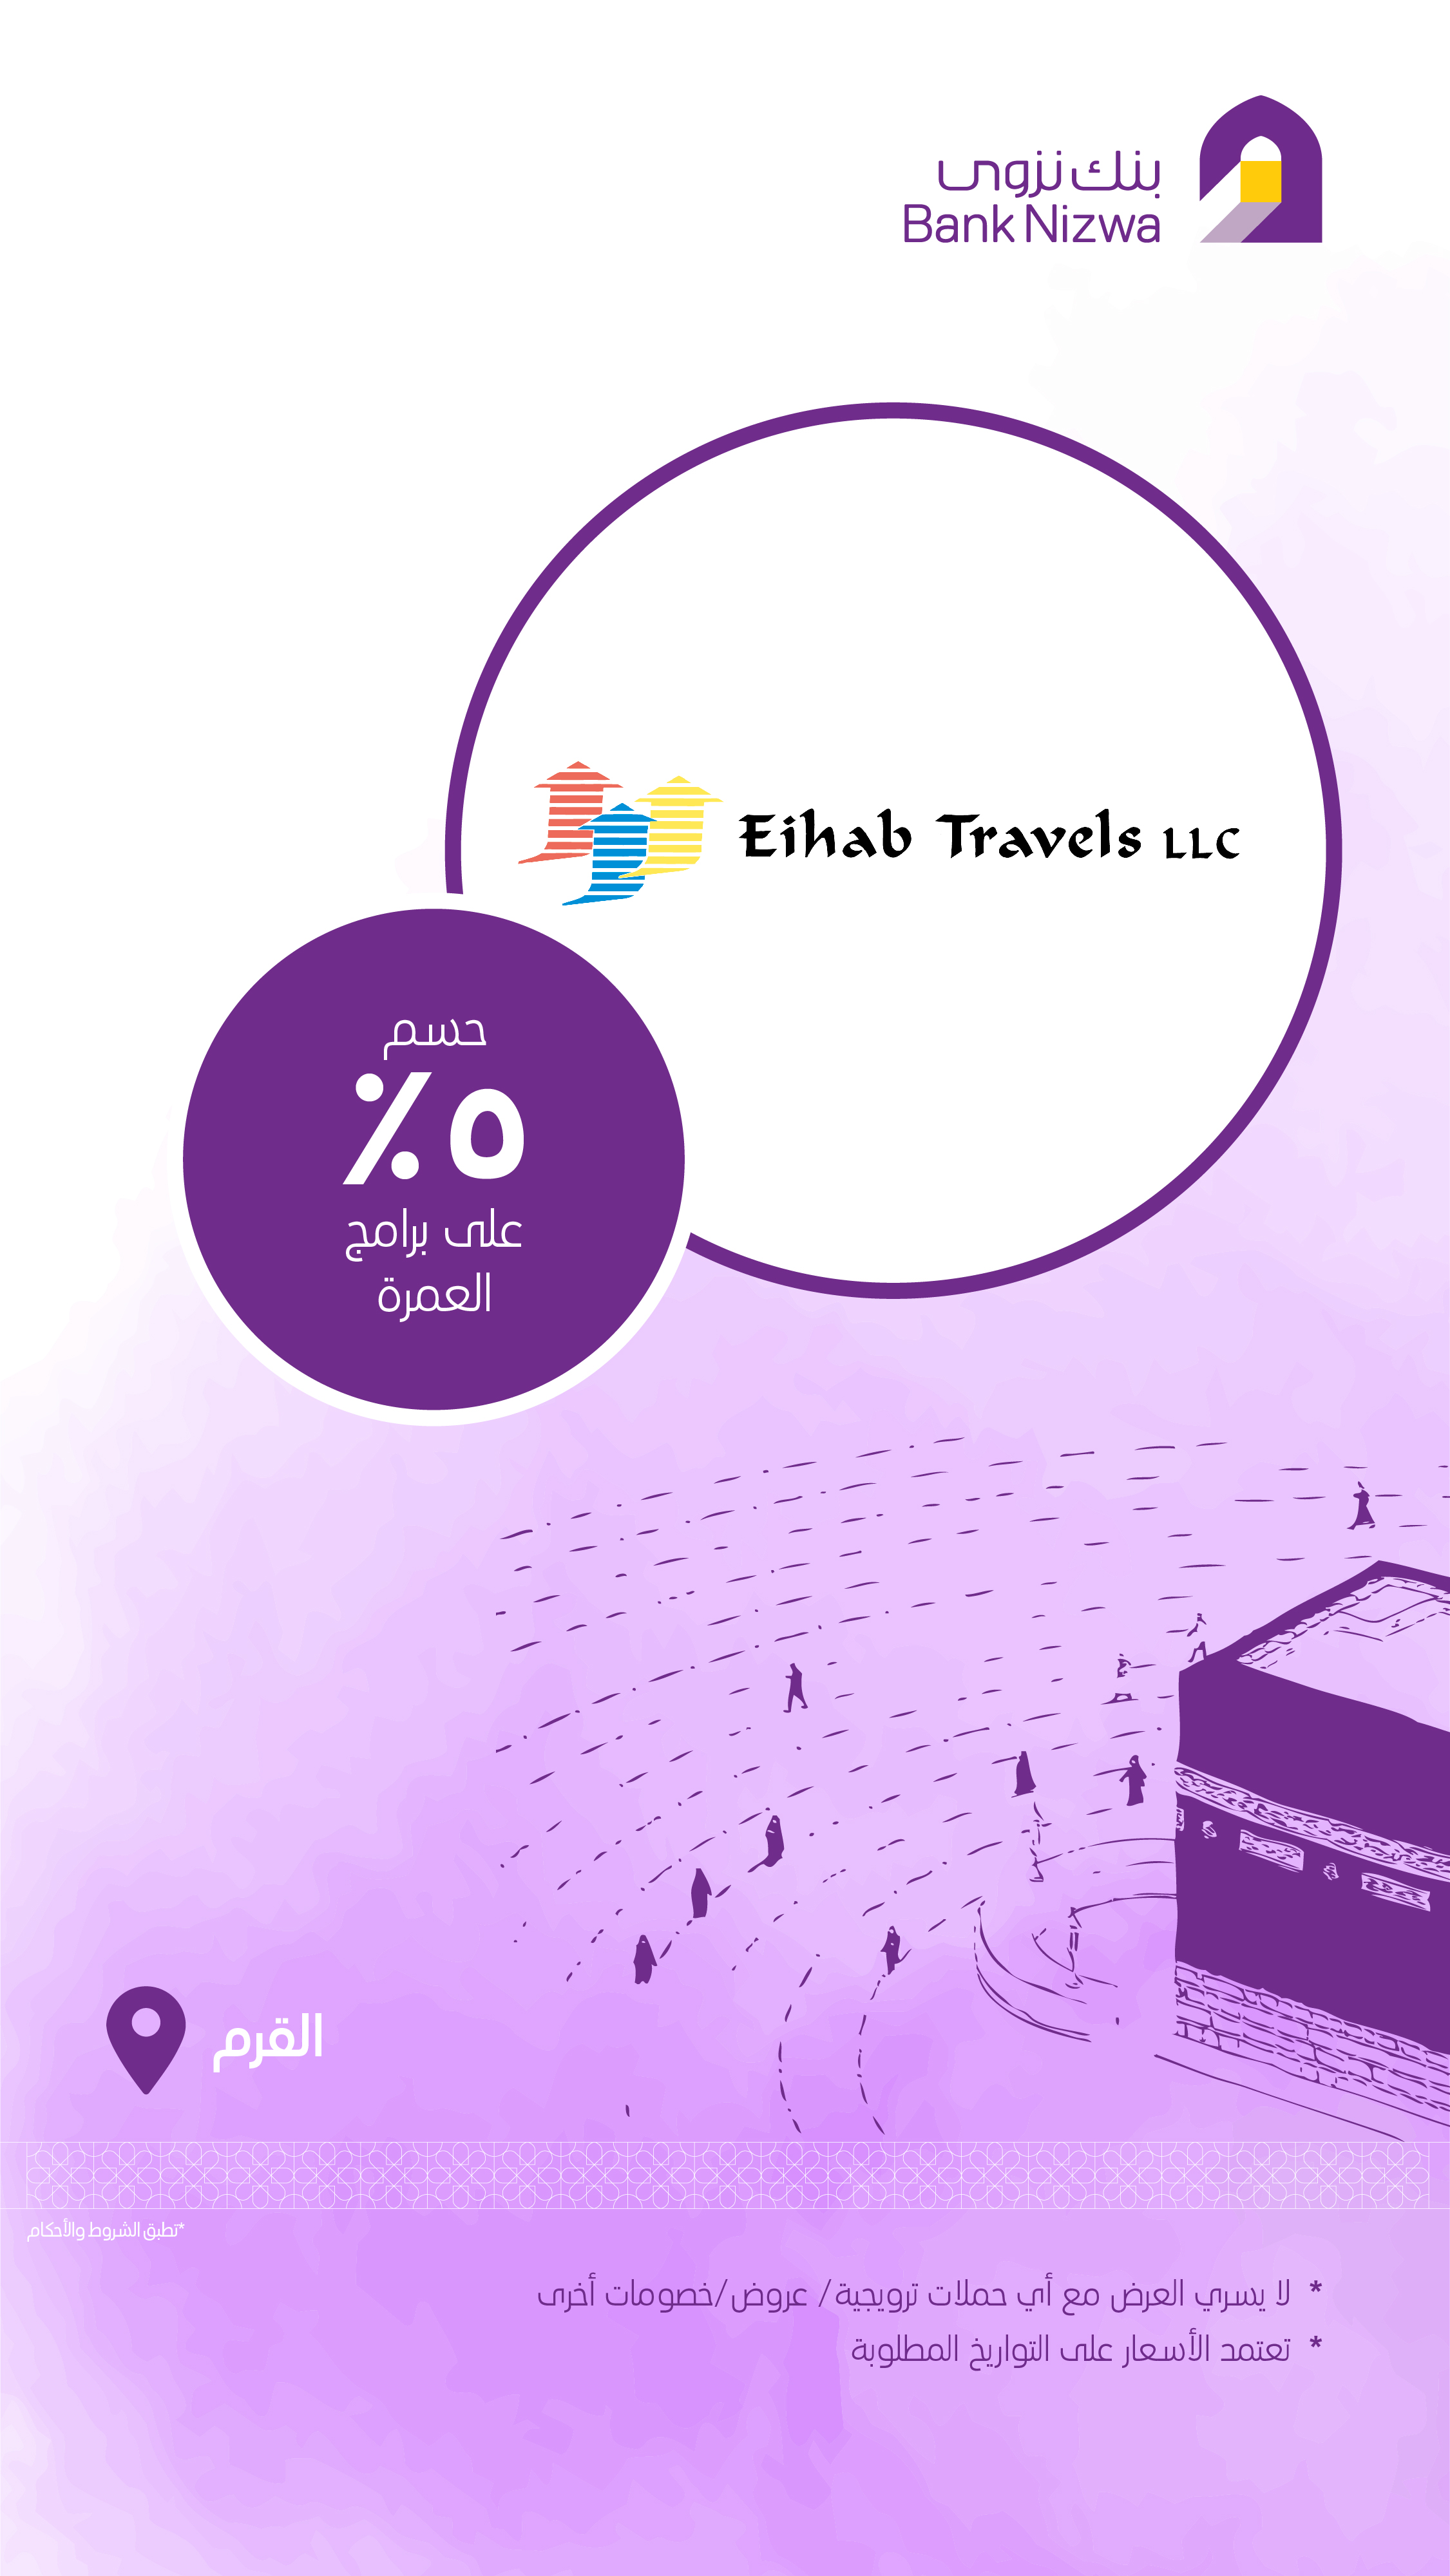 Eihab Travels L.L.C